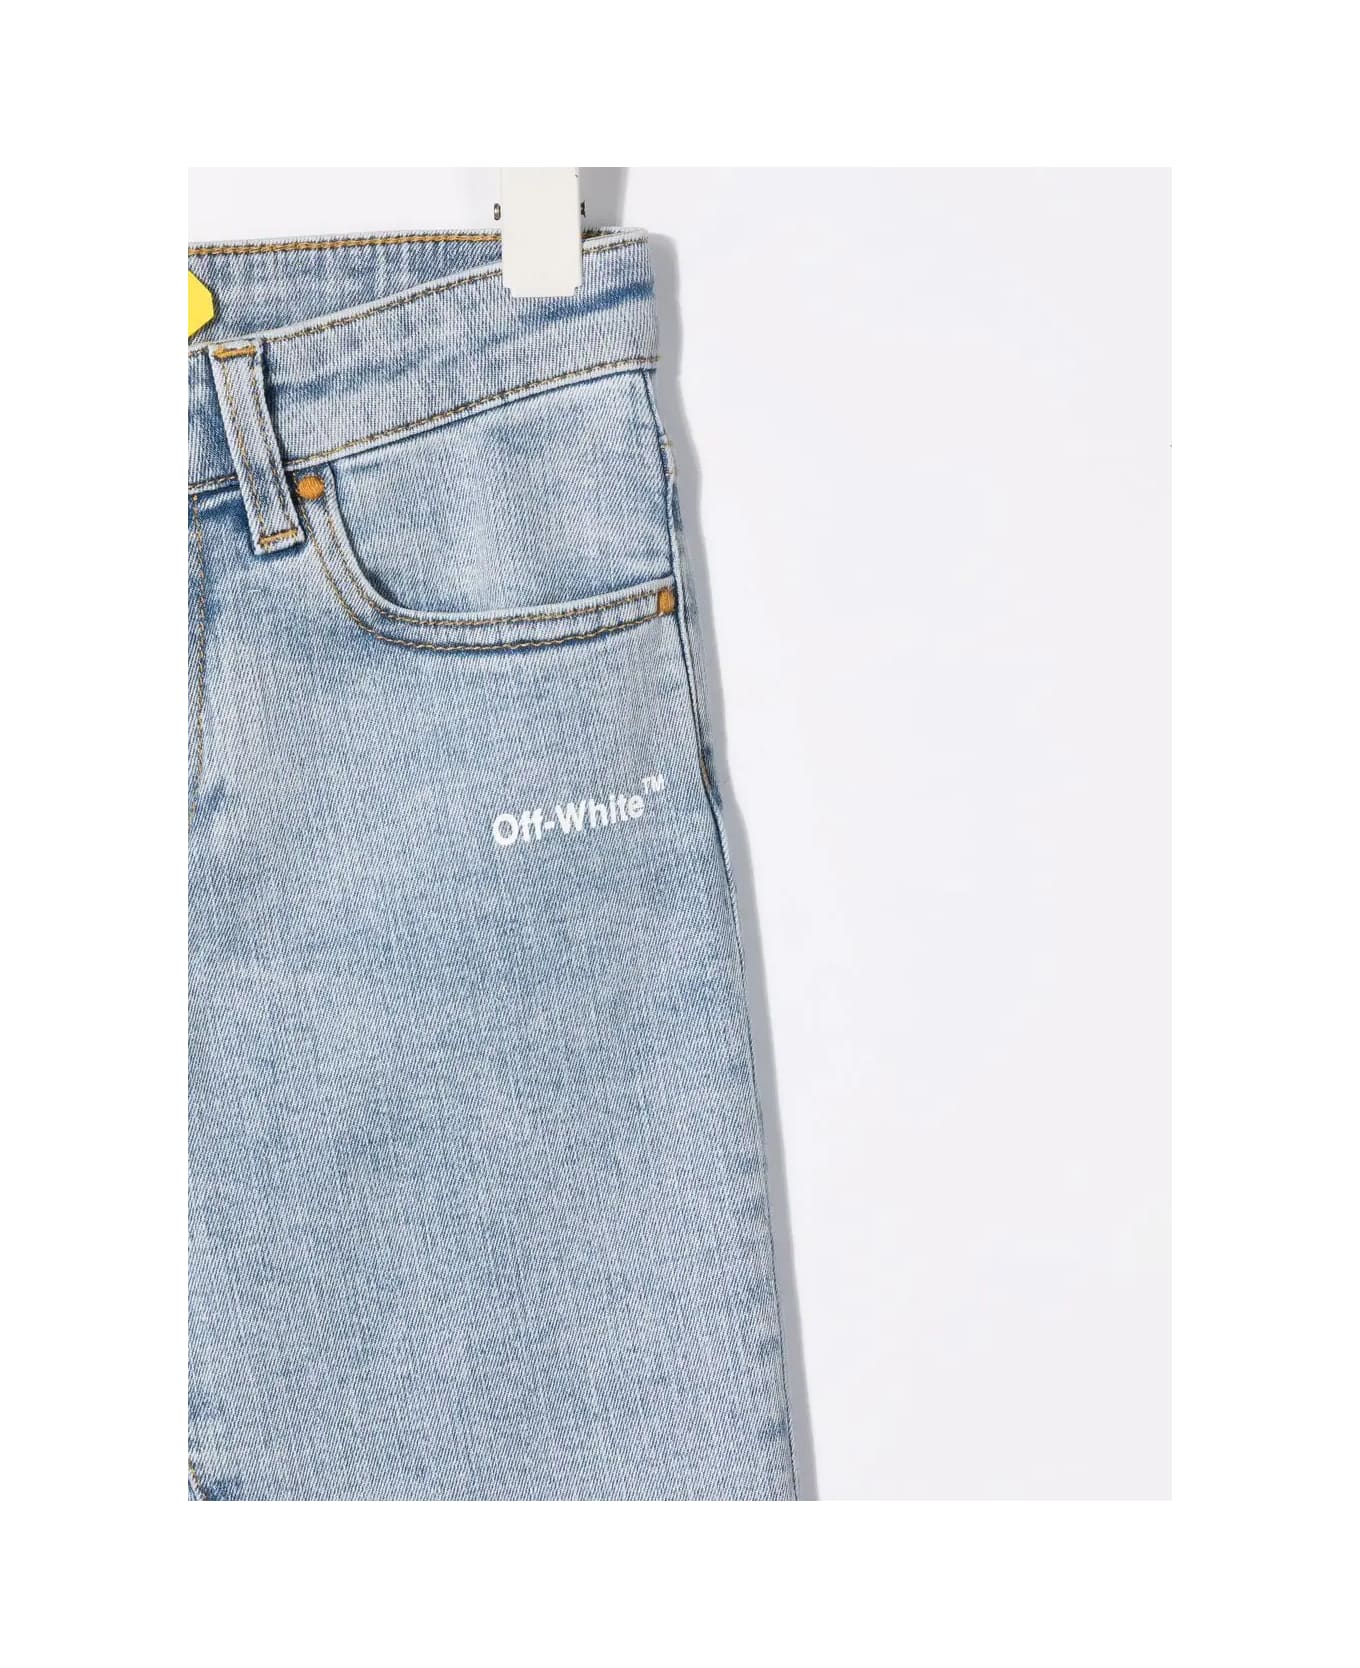 Off-White Kids Ow Helvetica Jeans In Light Denim - Light blue